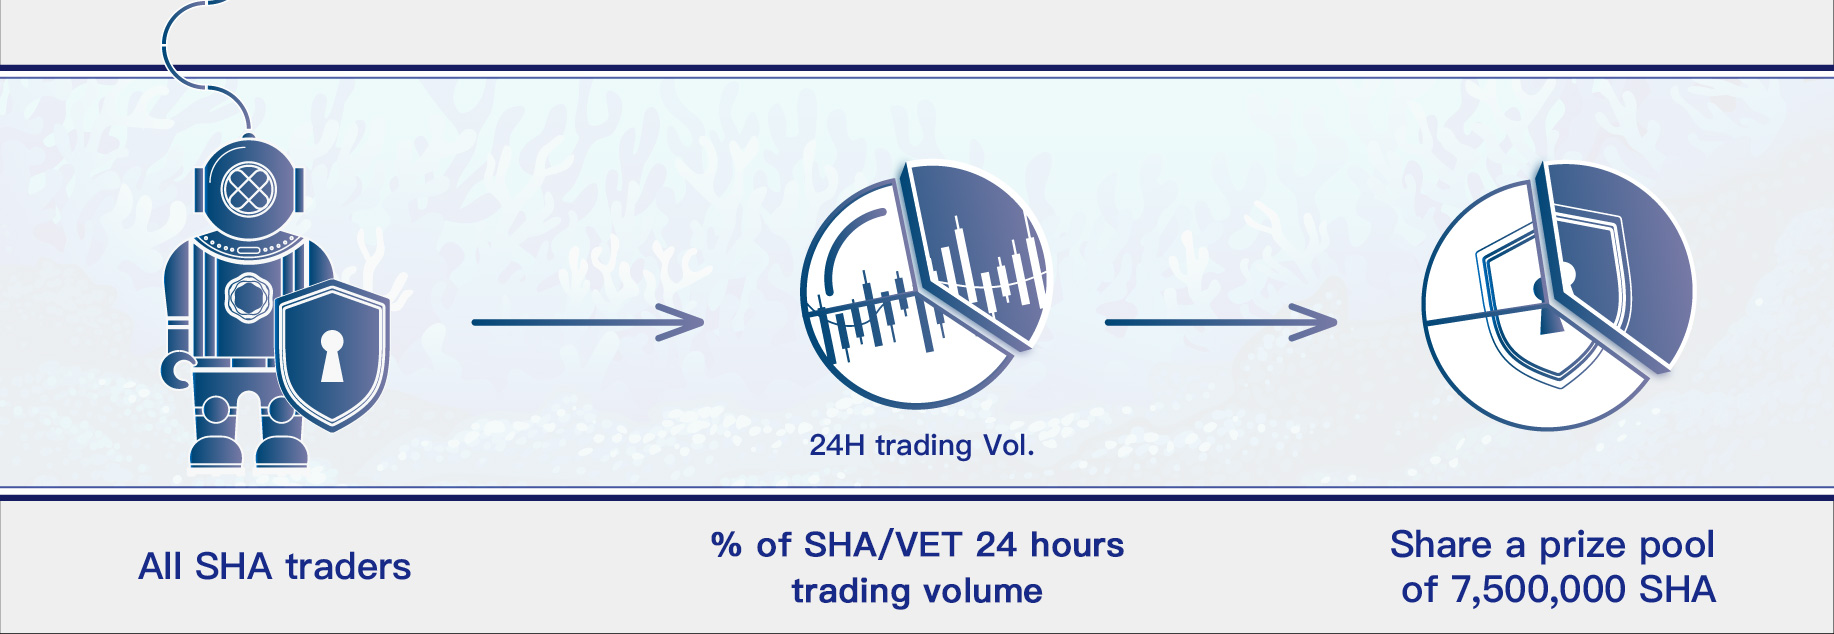 Trading_volume.jpg